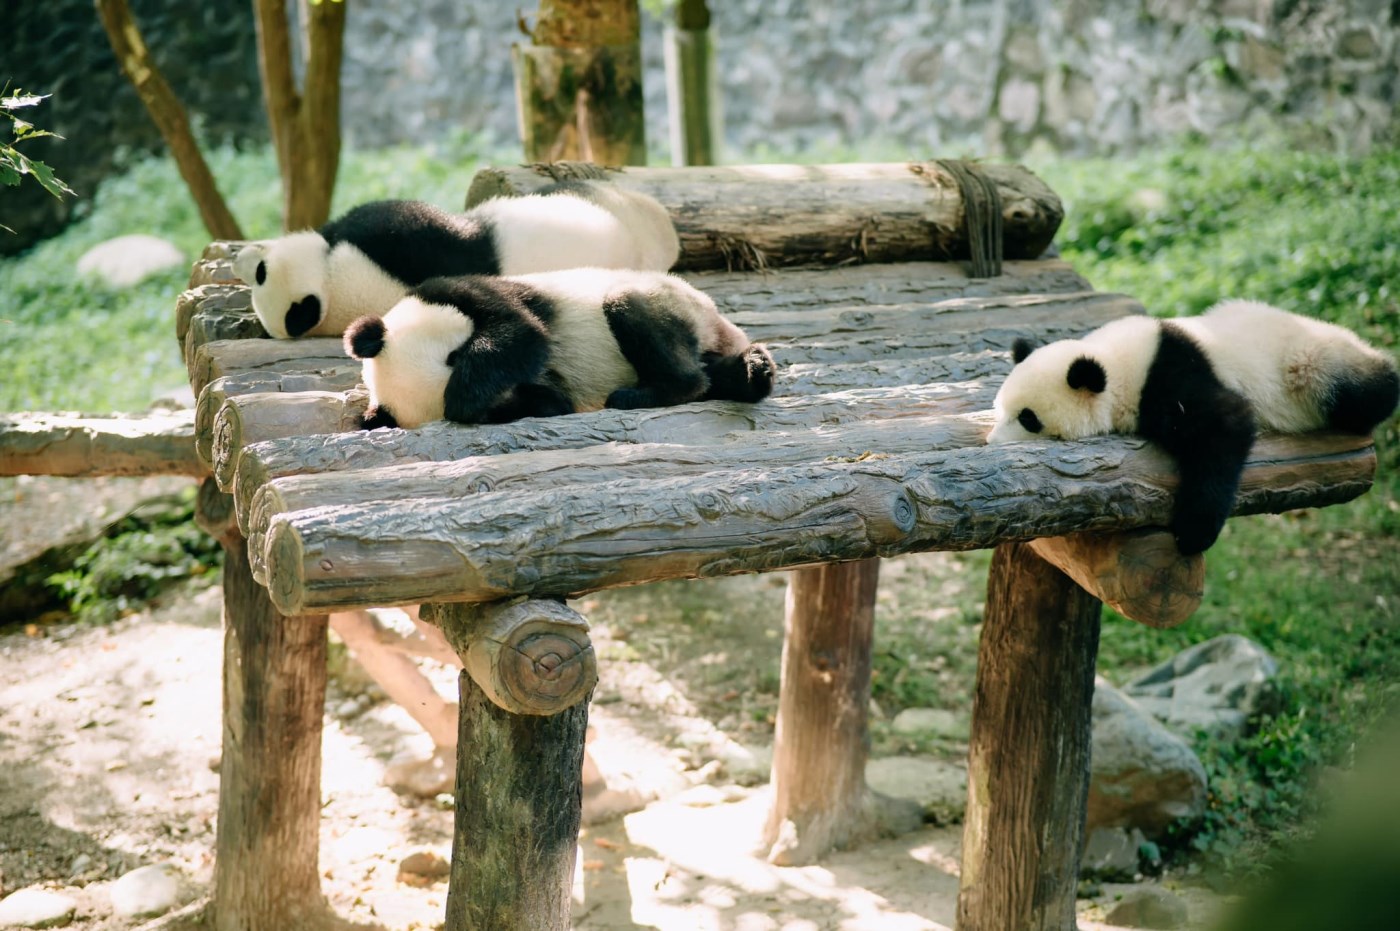 Công viên Gấu trúc Đô Giang Yển - Thế giới của những chú gấu trúc ở Thành Đô